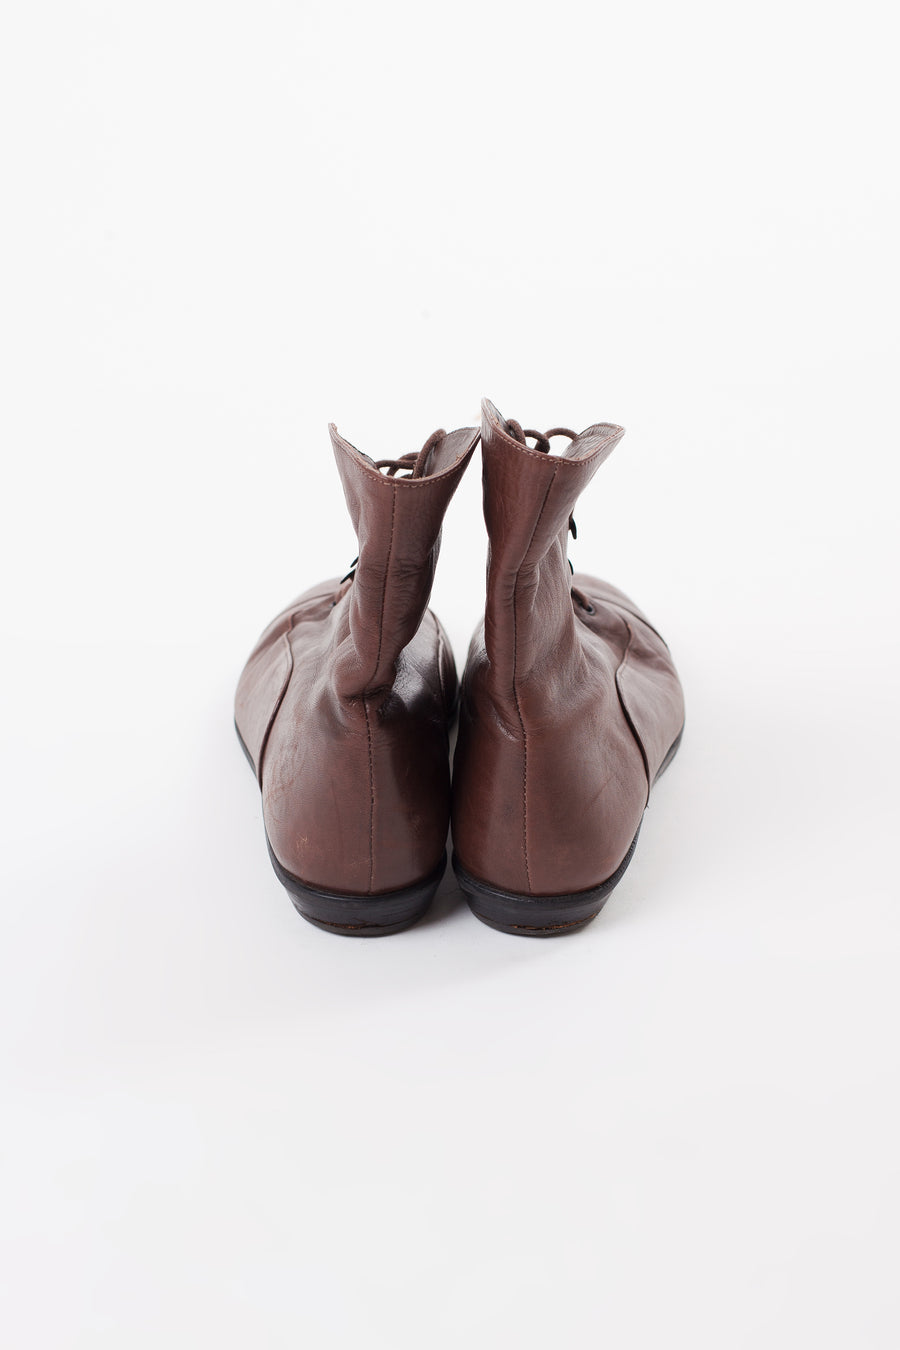 Vintage Brown Ankle Booties | 6.5M